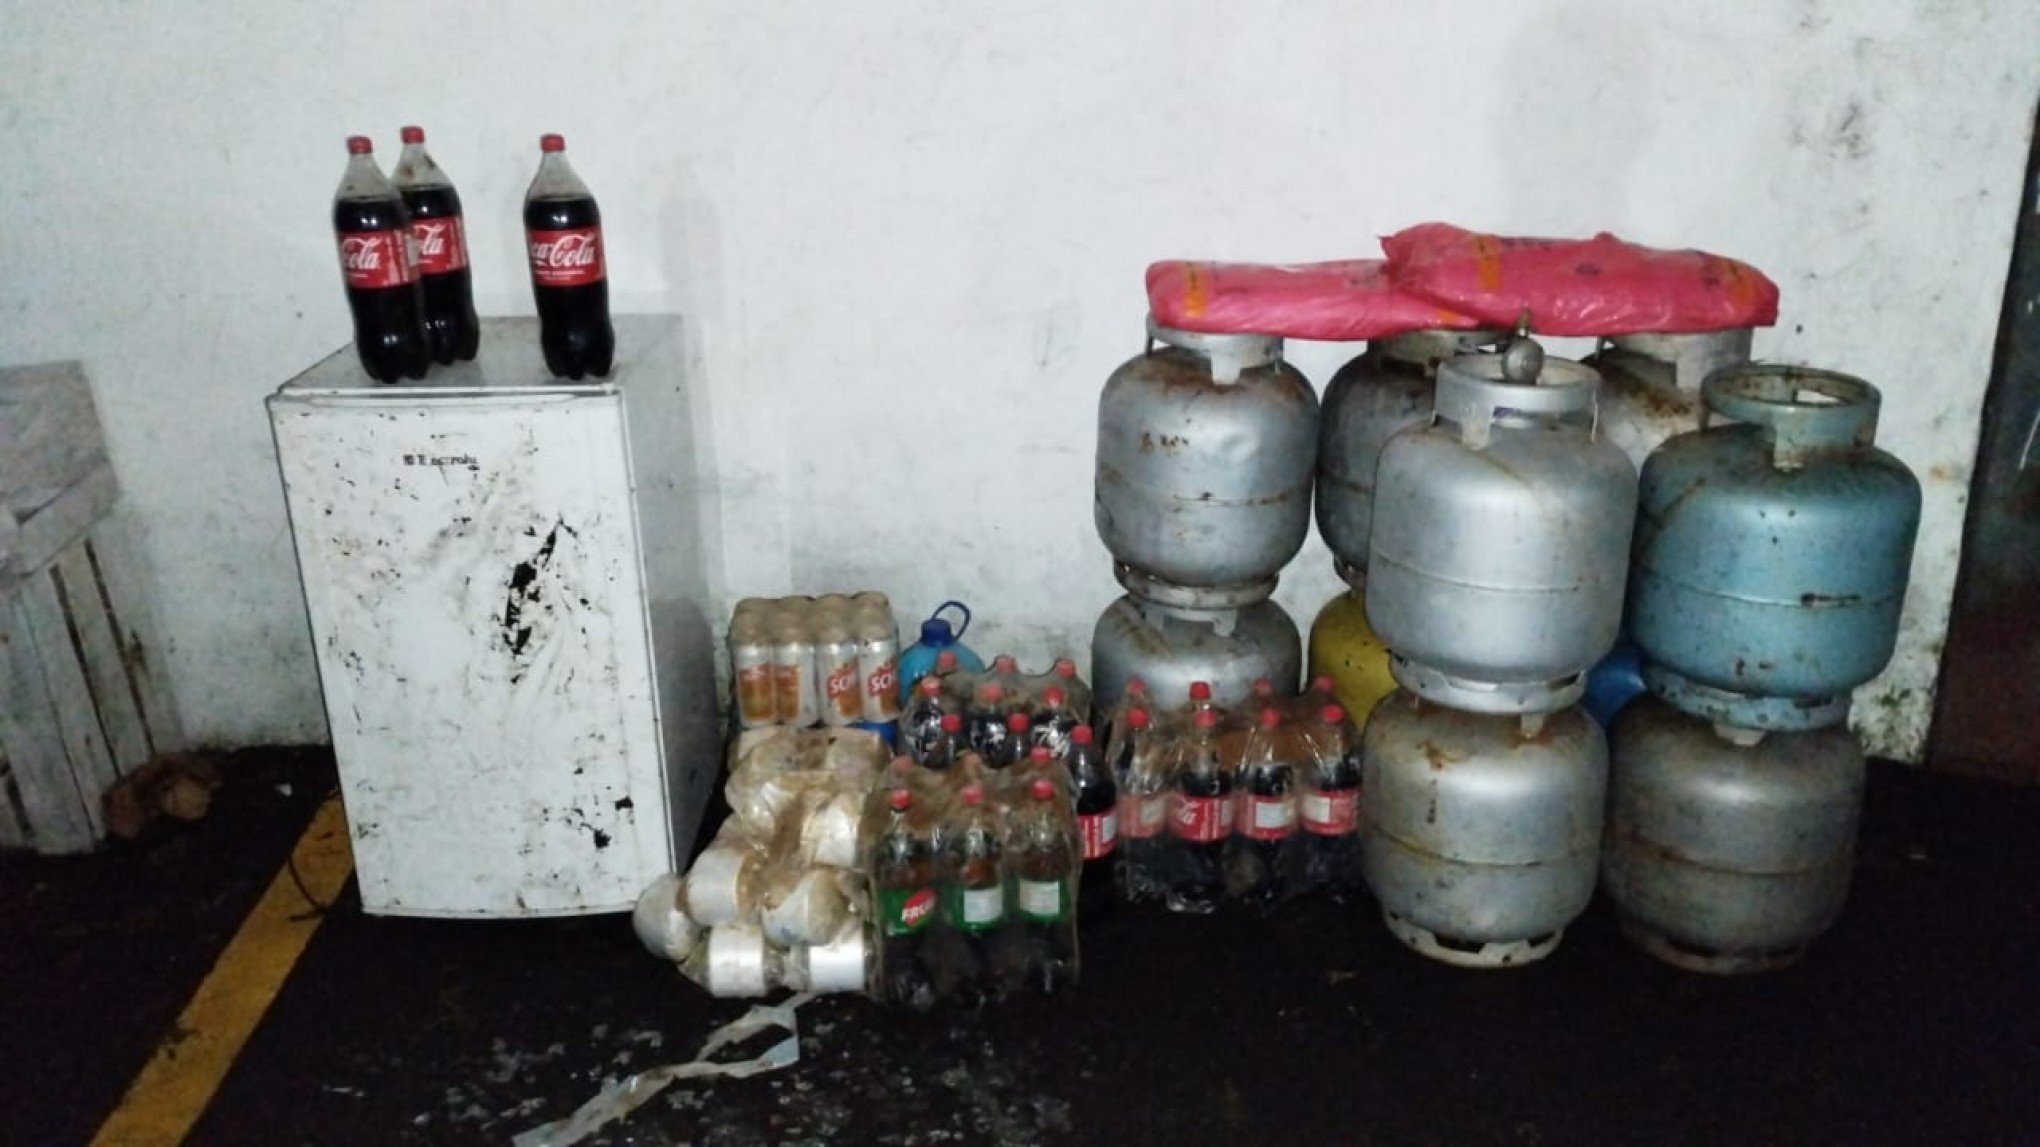 CATÁSTROFE NO RS: Homens são presos ao furtar com barco em áreas alagadas; 10 botijões, frigobar e cervejas estavam na embarcação